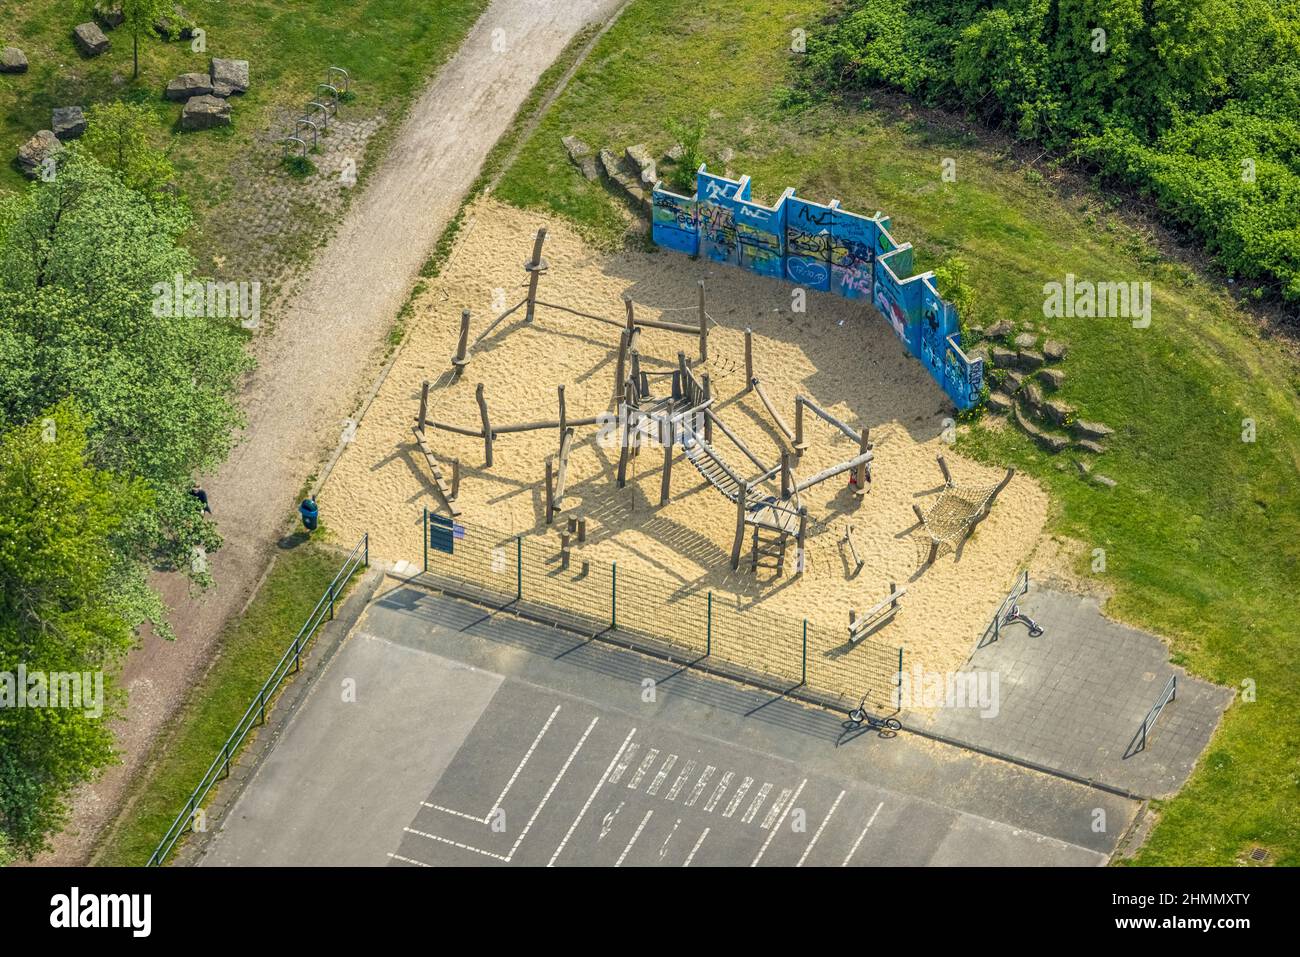 Vista aerea, parco giochi presso il parco skate, Brauck, Gladbeck, zona della Ruhr, Renania settentrionale-Vestfalia, Germania, DE, Europa, tempo libero, fotografia aerea, aeri Foto Stock